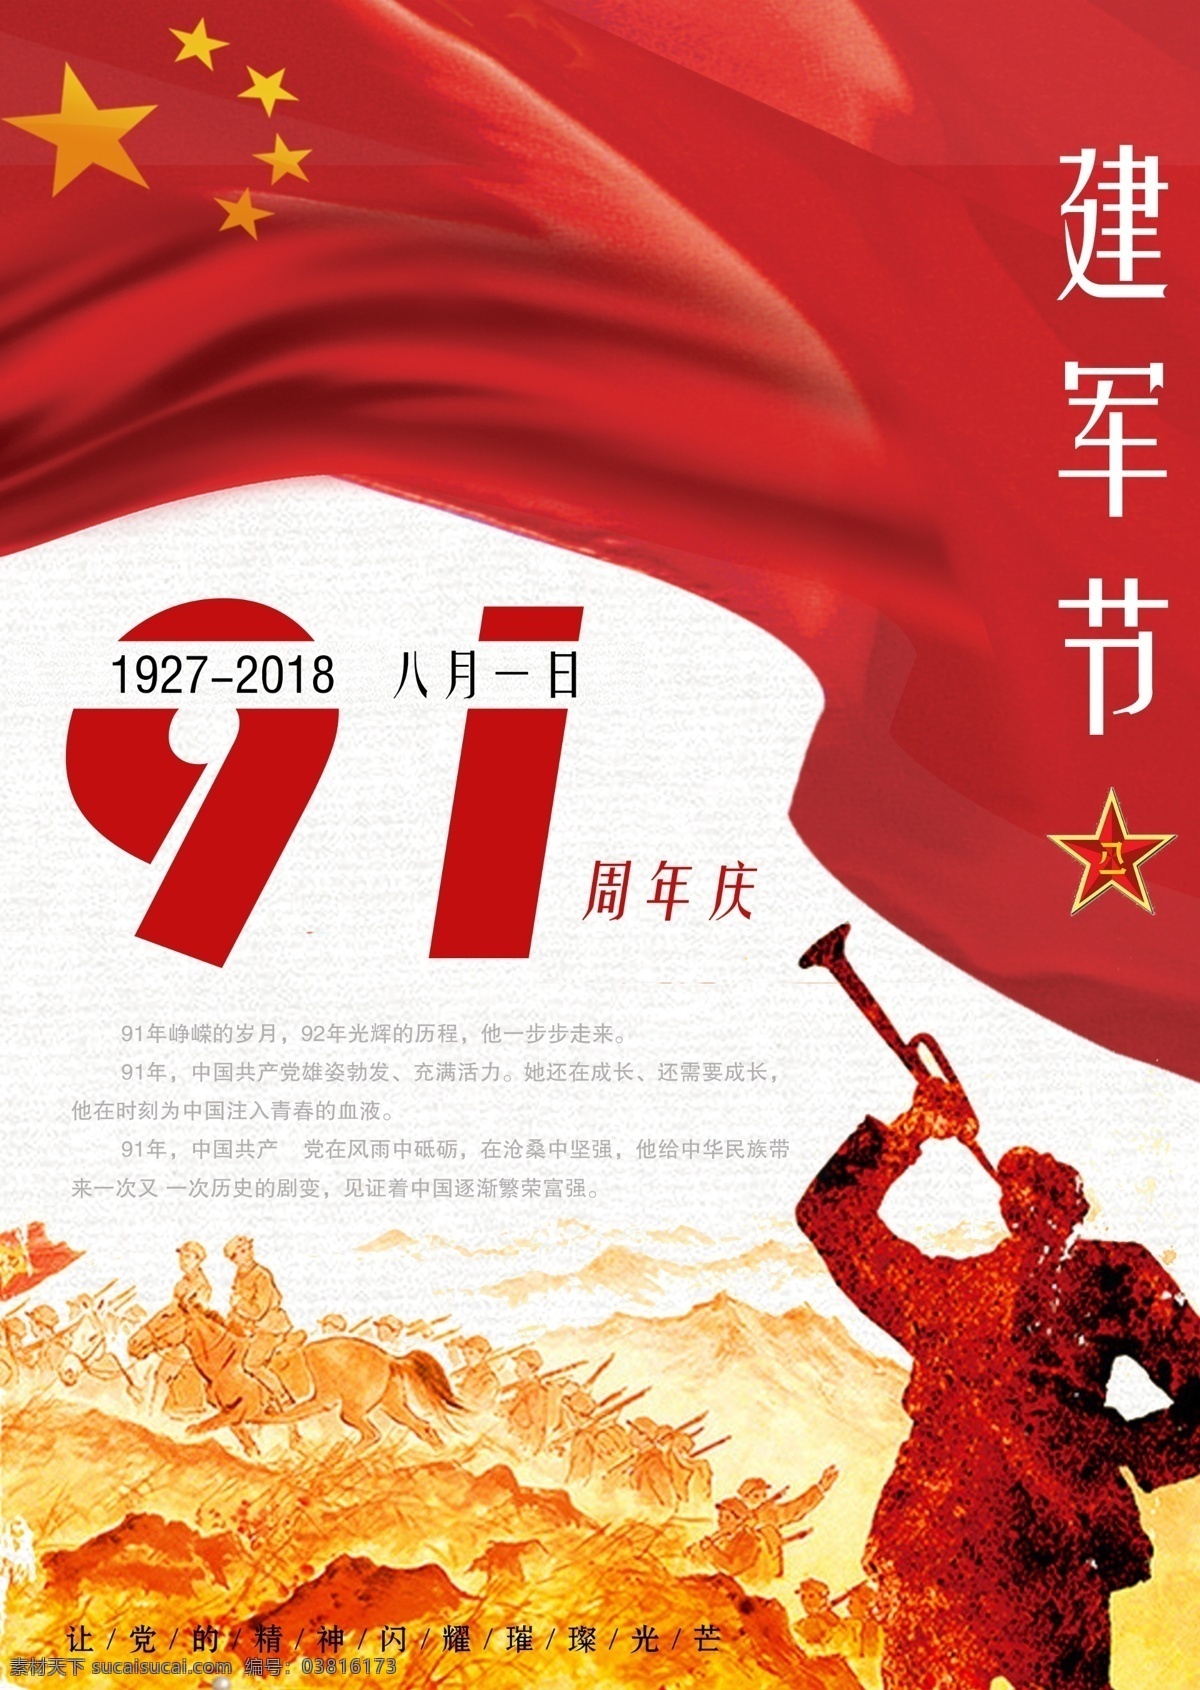 八一建军节 节日 海报 户外海报 建军节 建军周年庆 八一军徽 红色 八 周年庆